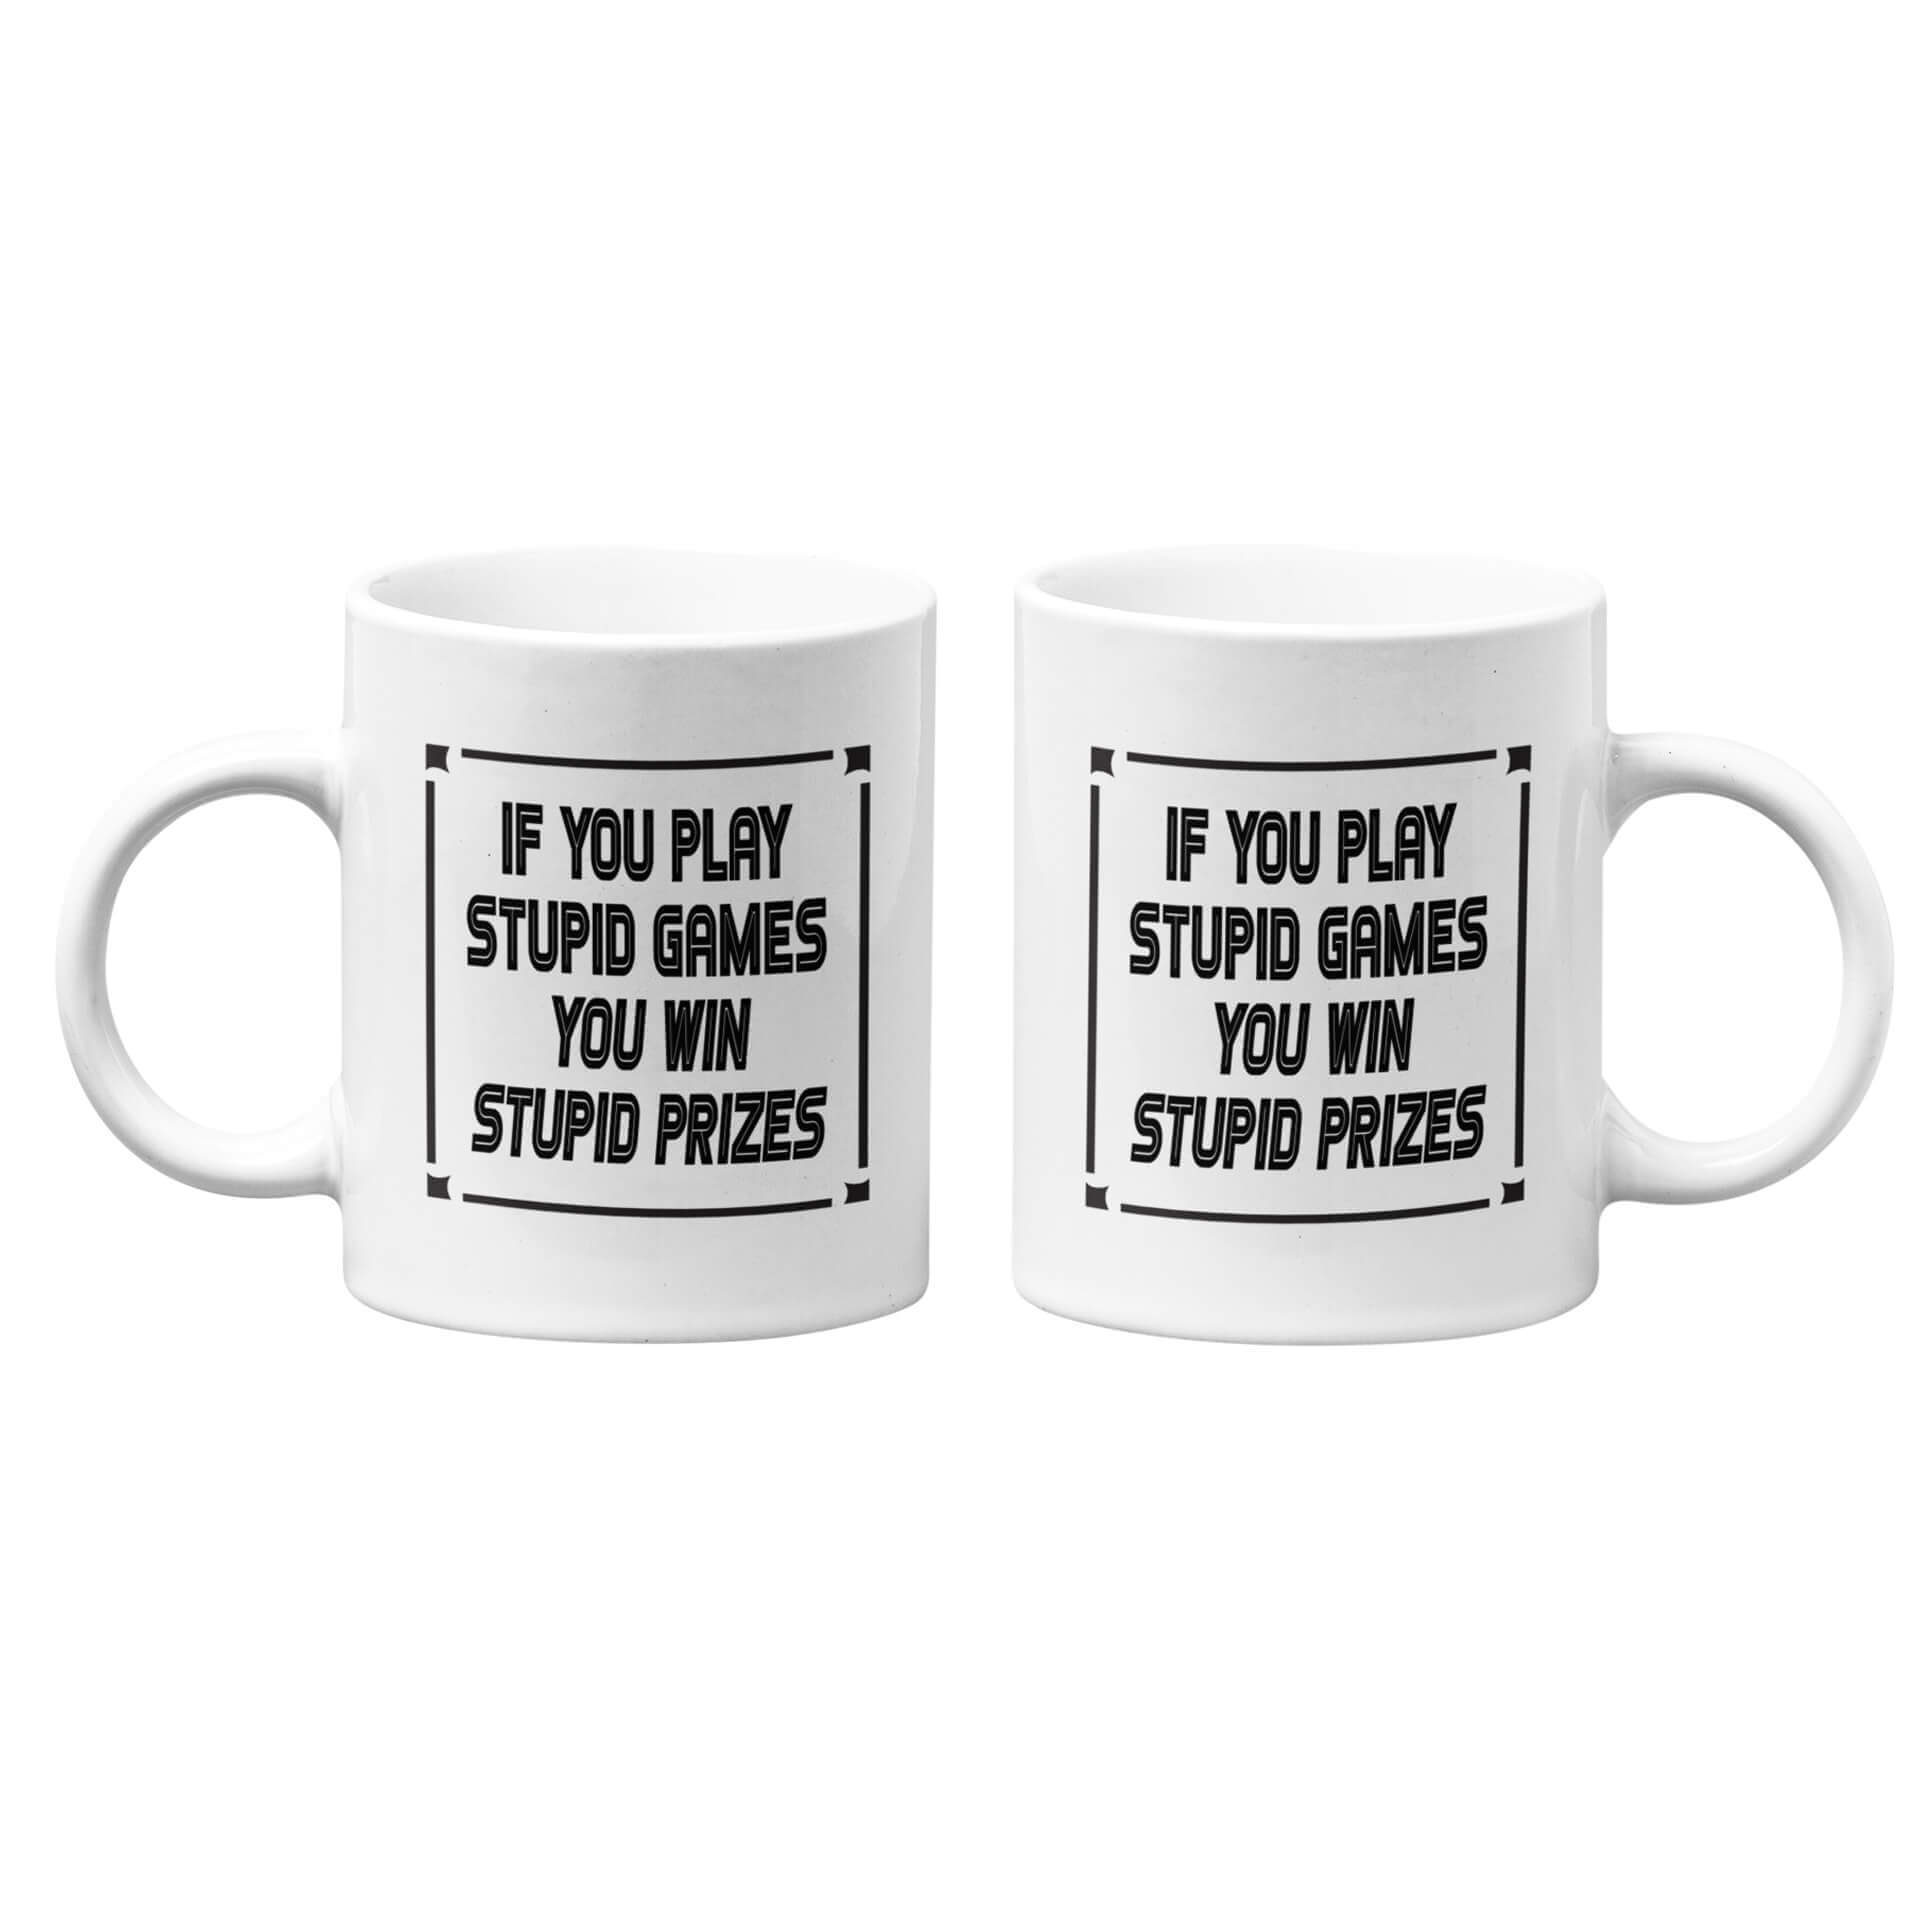 If You Play Stupid Games You Win Stupid Prizes Mug